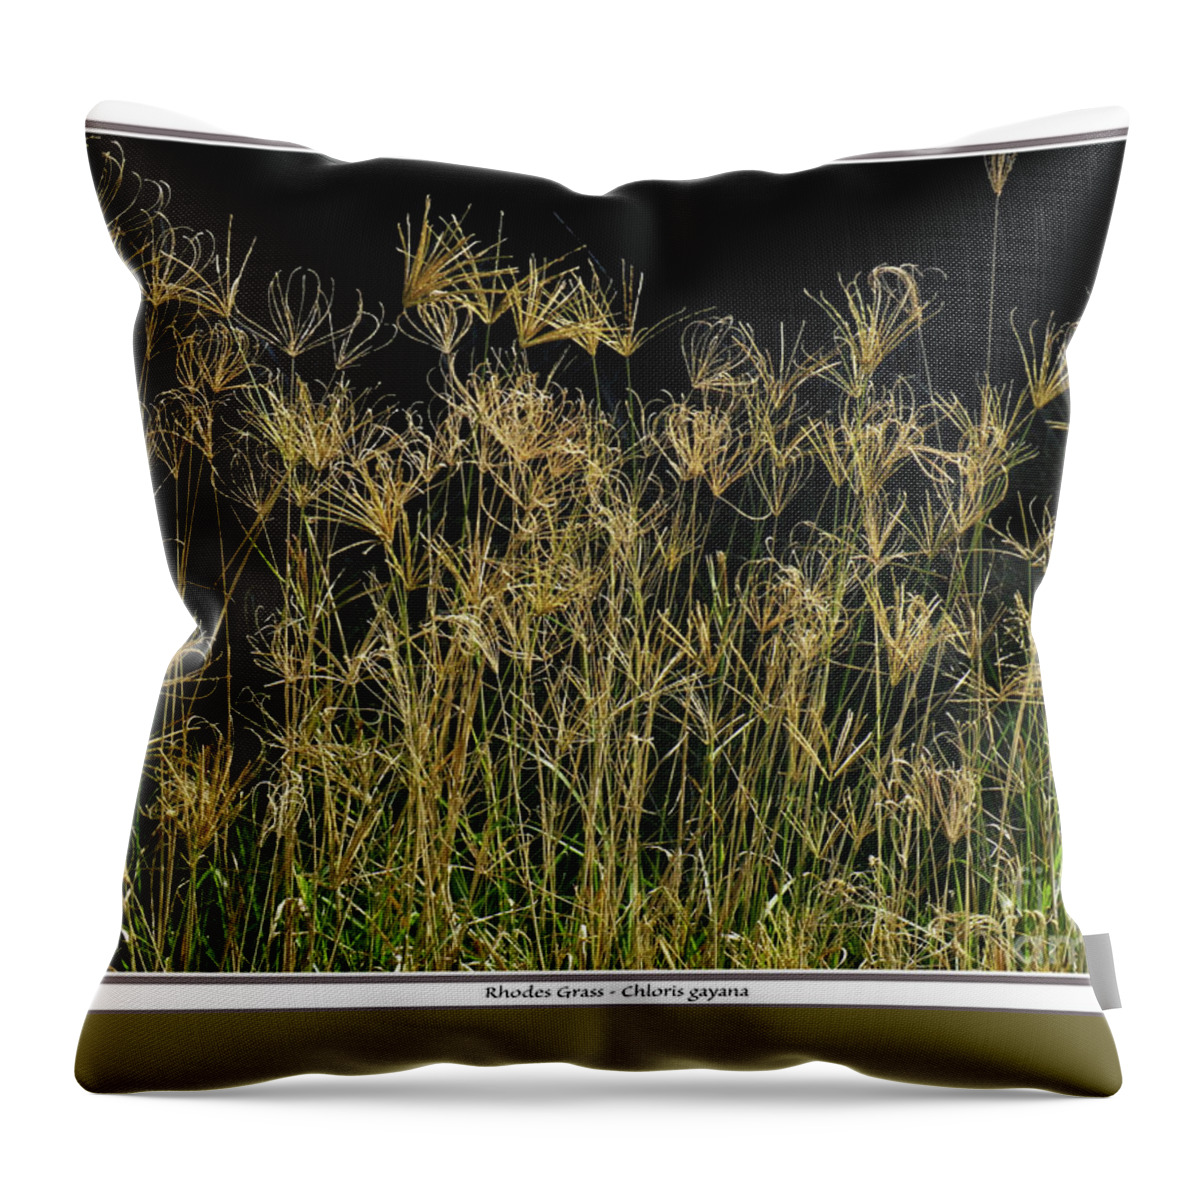 Grass Throw Pillow featuring the photograph Rhodes Grass Chloris gayana by Klaus Jaritz